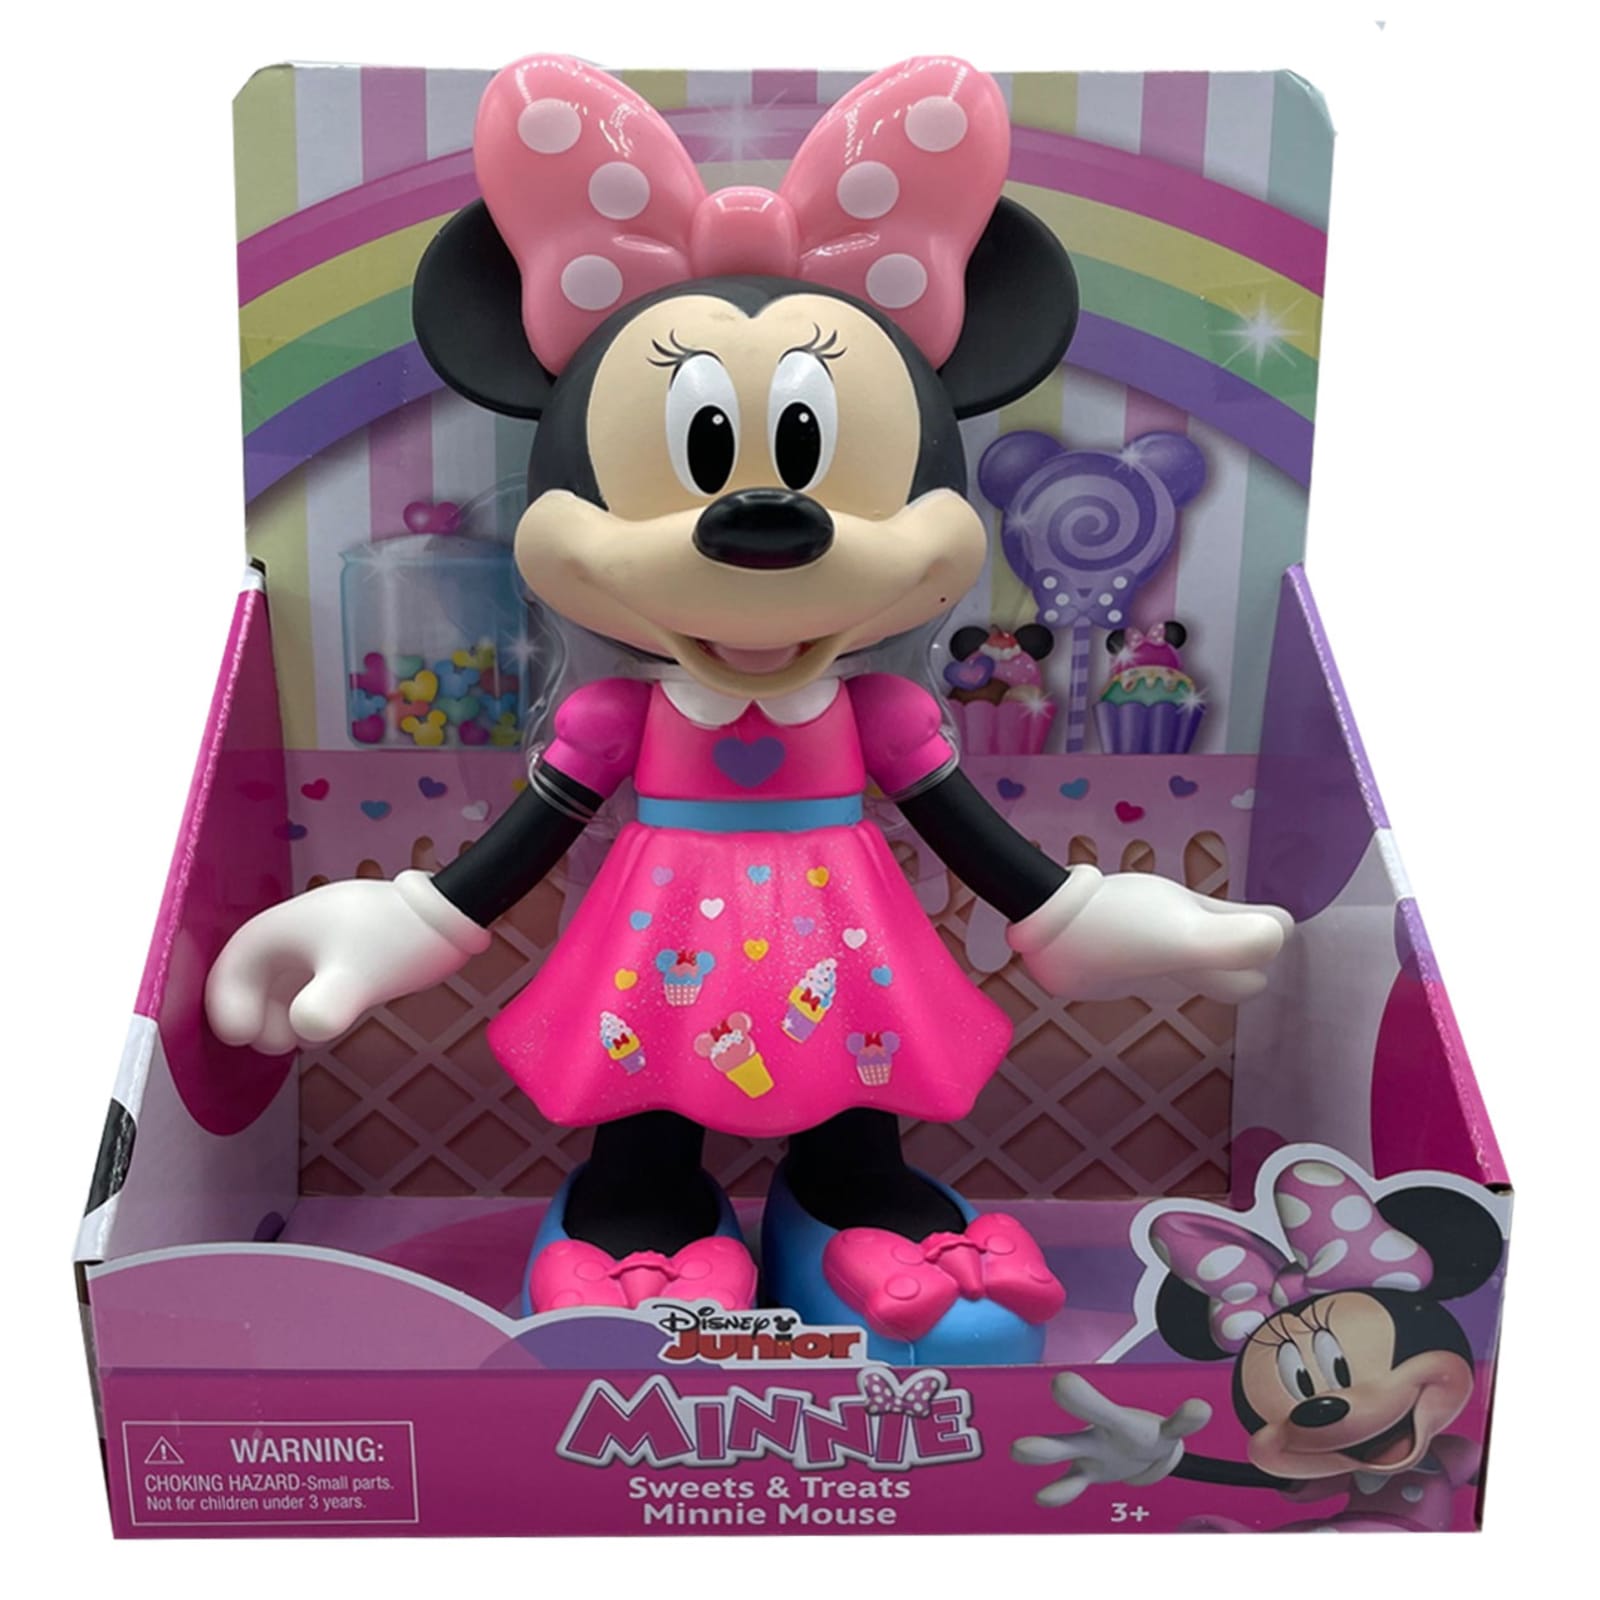 Minnie Sweets & Treats Minnie Mouse by Disney Junior at Fleet Farm